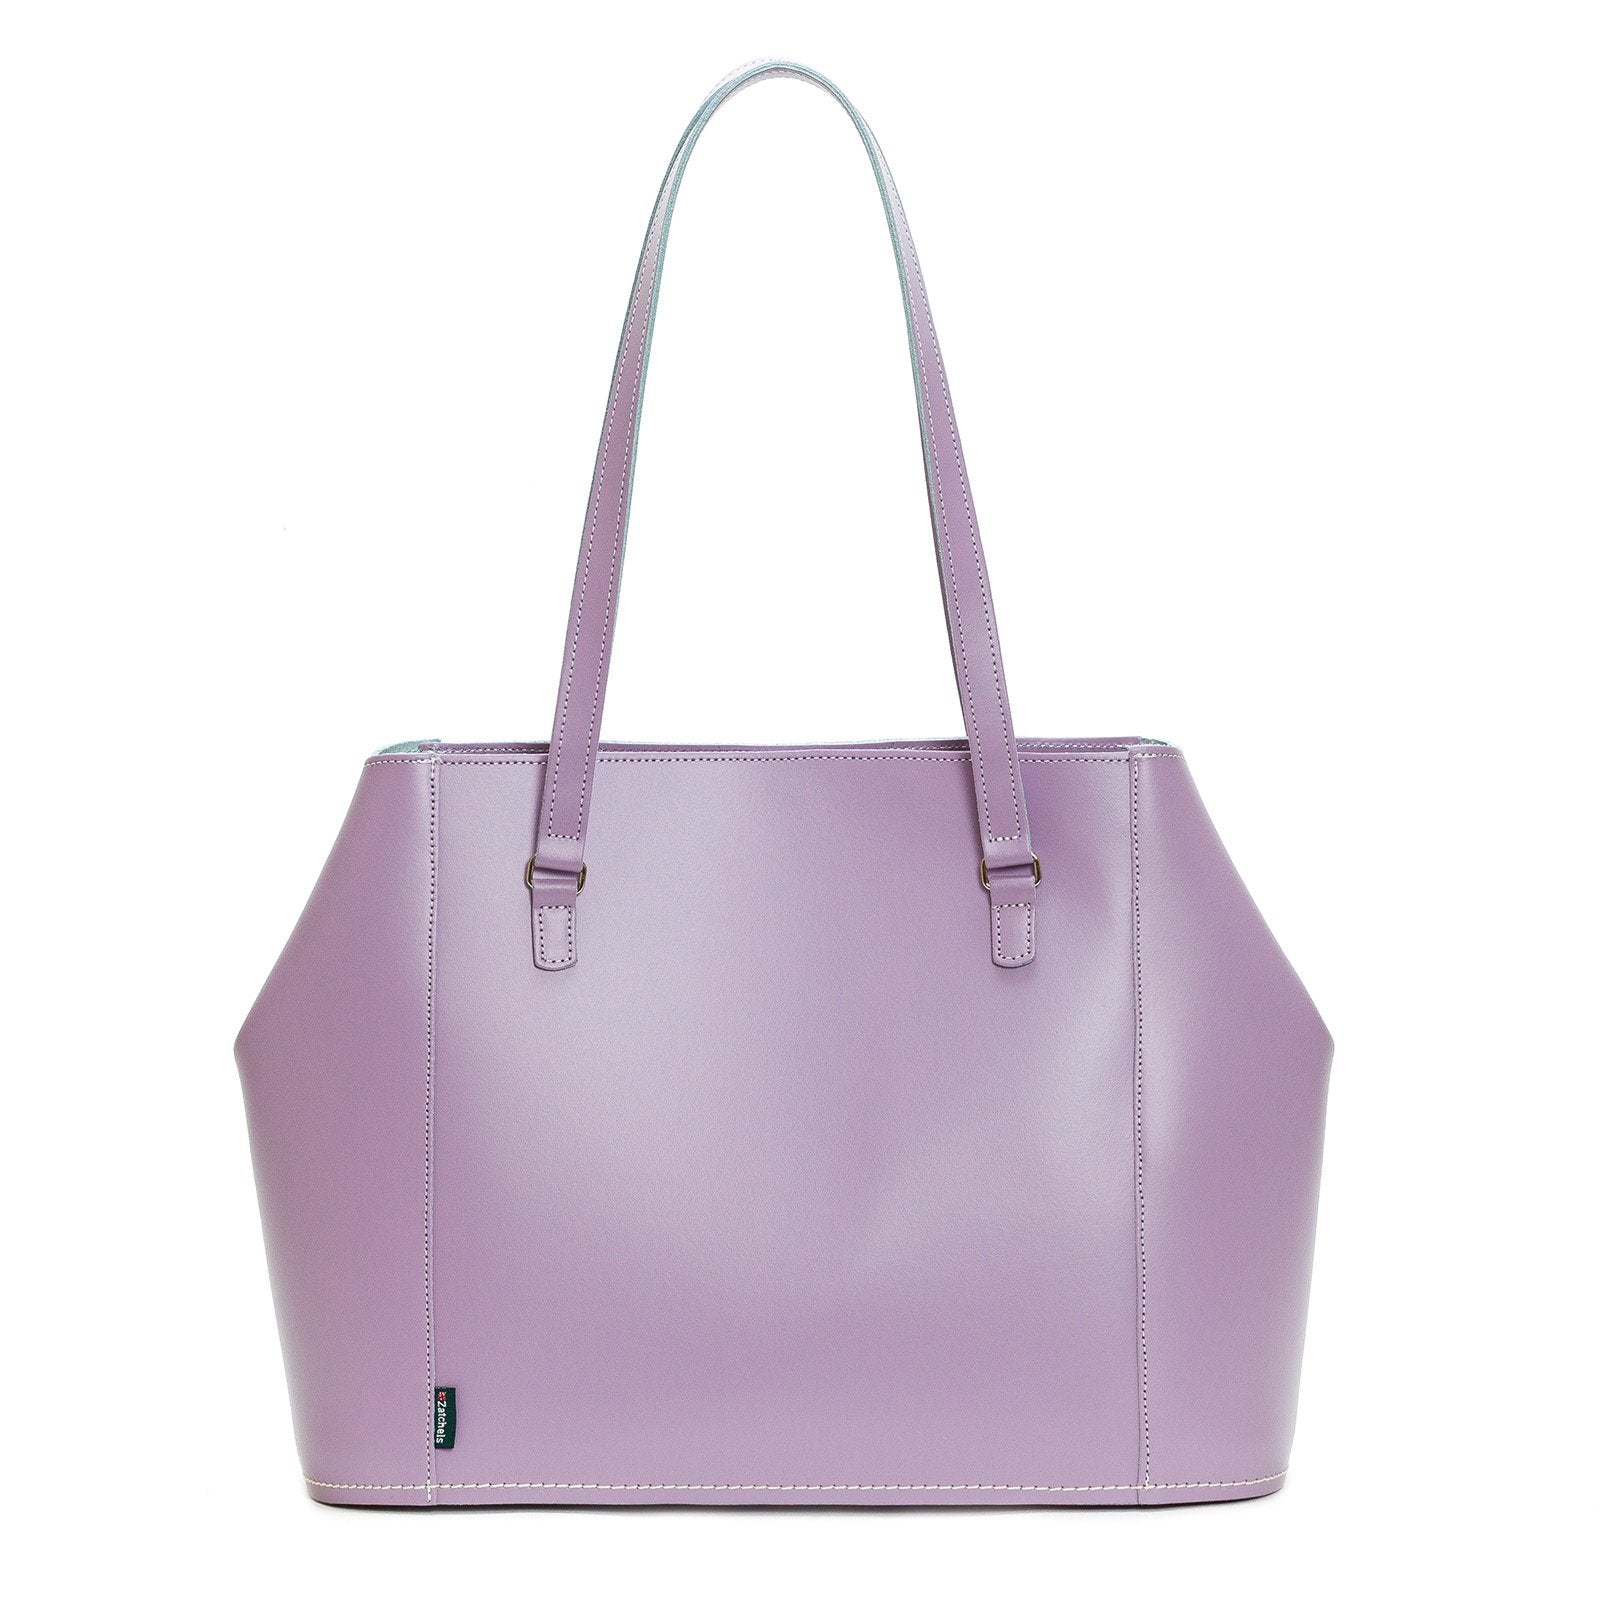 Leather Tote Bag - Pastel Violet